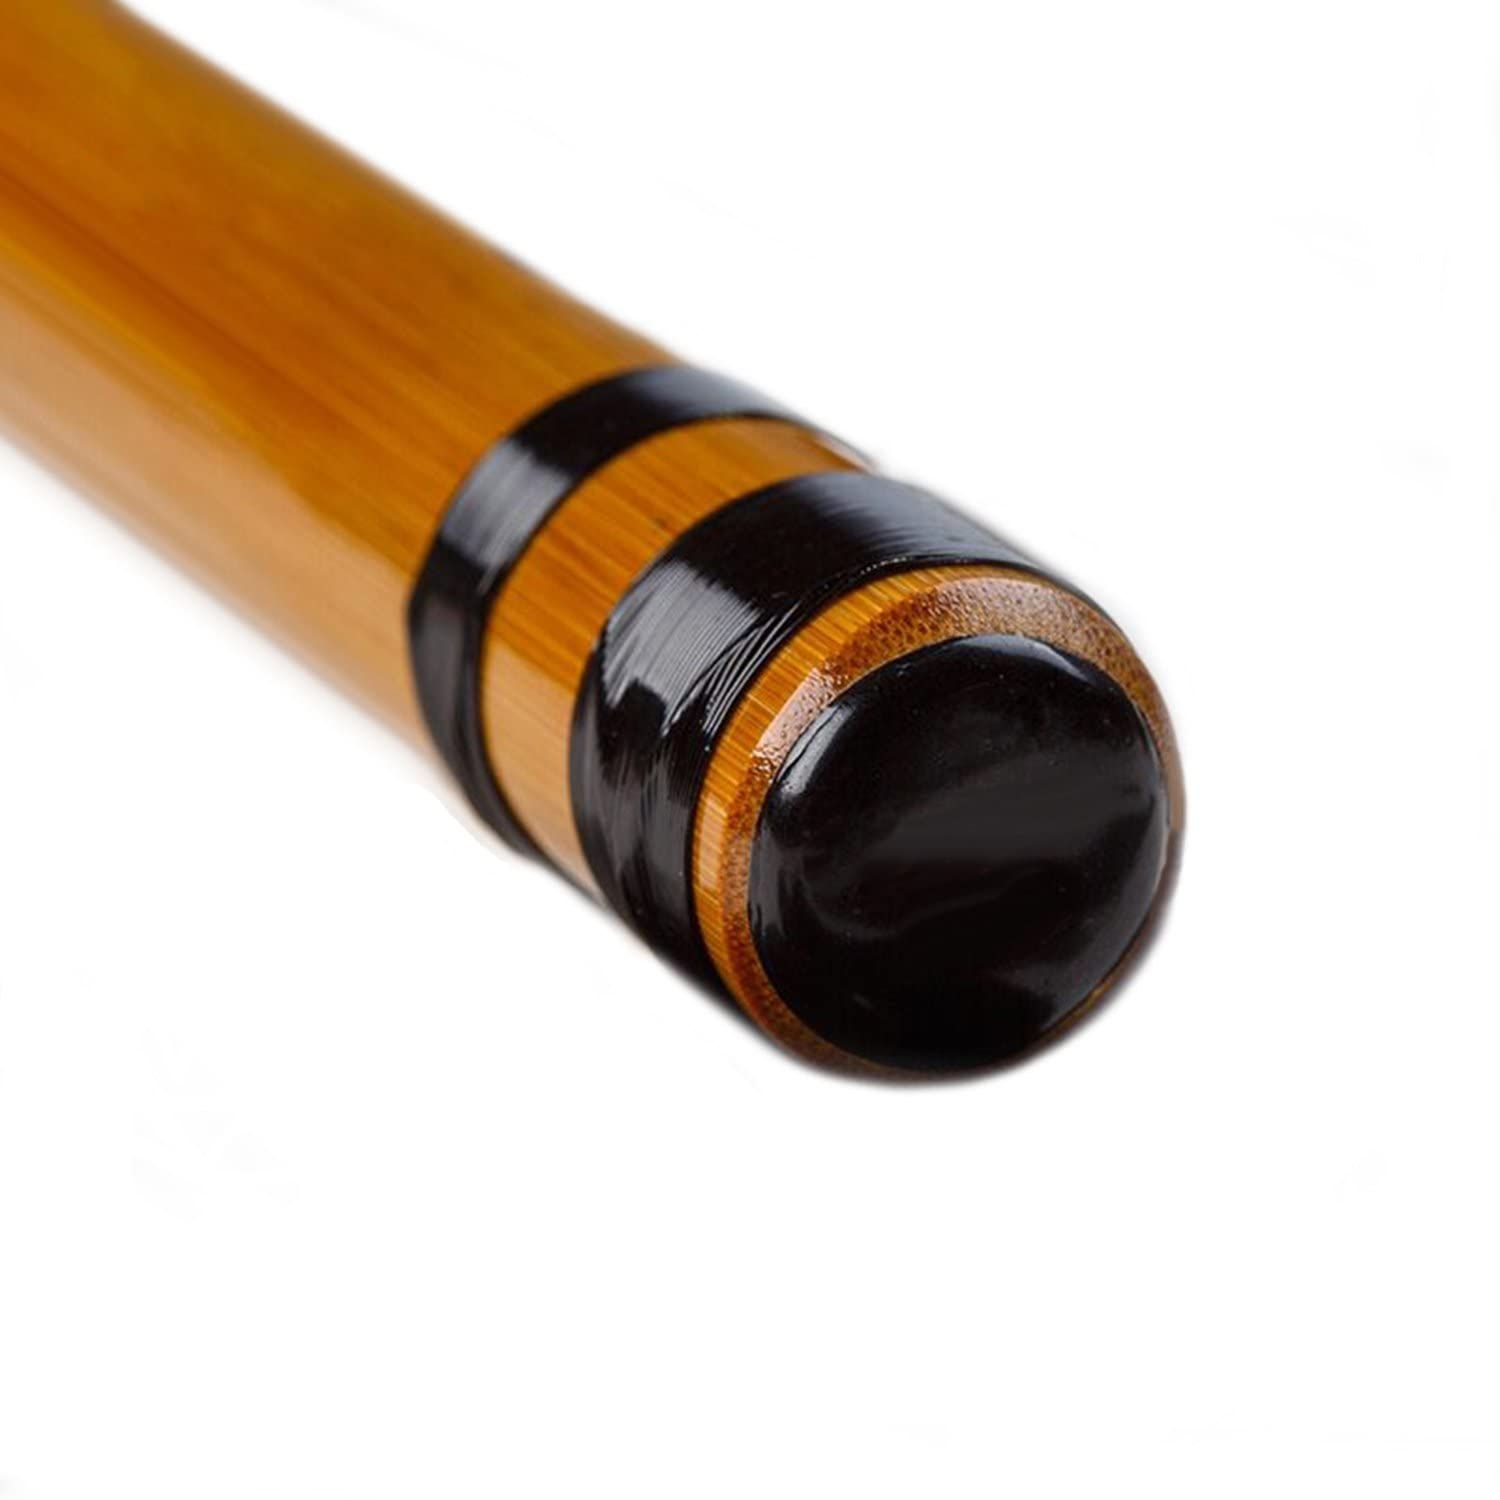 山本竹細工屋 竹製篠笛 7穴 七本調子 伝統的な楽器 竹笛横笛 (黒紐巻き